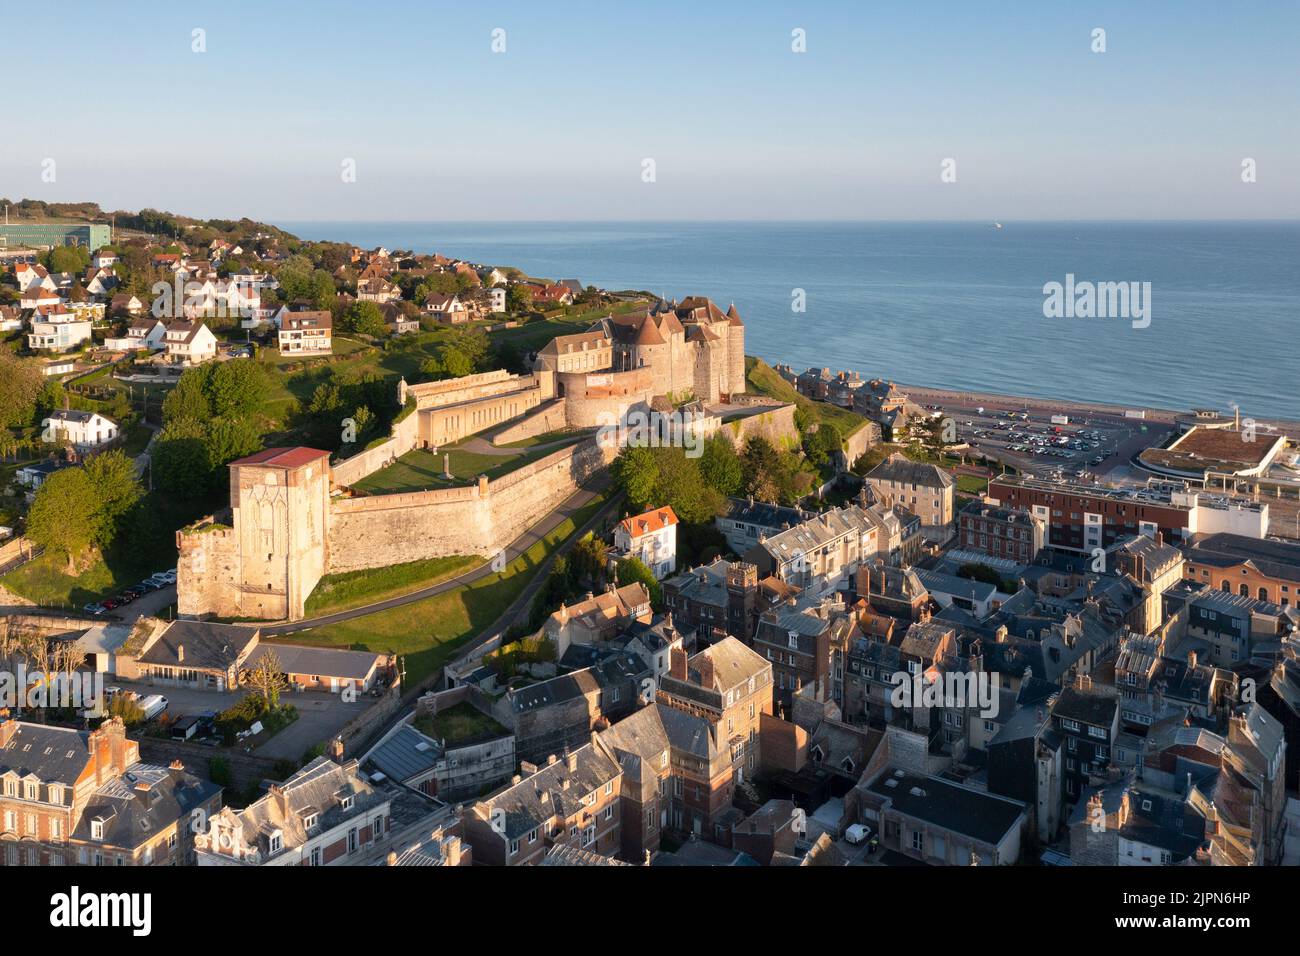 France, Seine-Maritime, Cote d'Albatre, Pays de Caux, Dieppe, Chateau de Dieppe, Dieppe castle and ramparts, castle that houses the Dieppe Museum of A Stock Photo